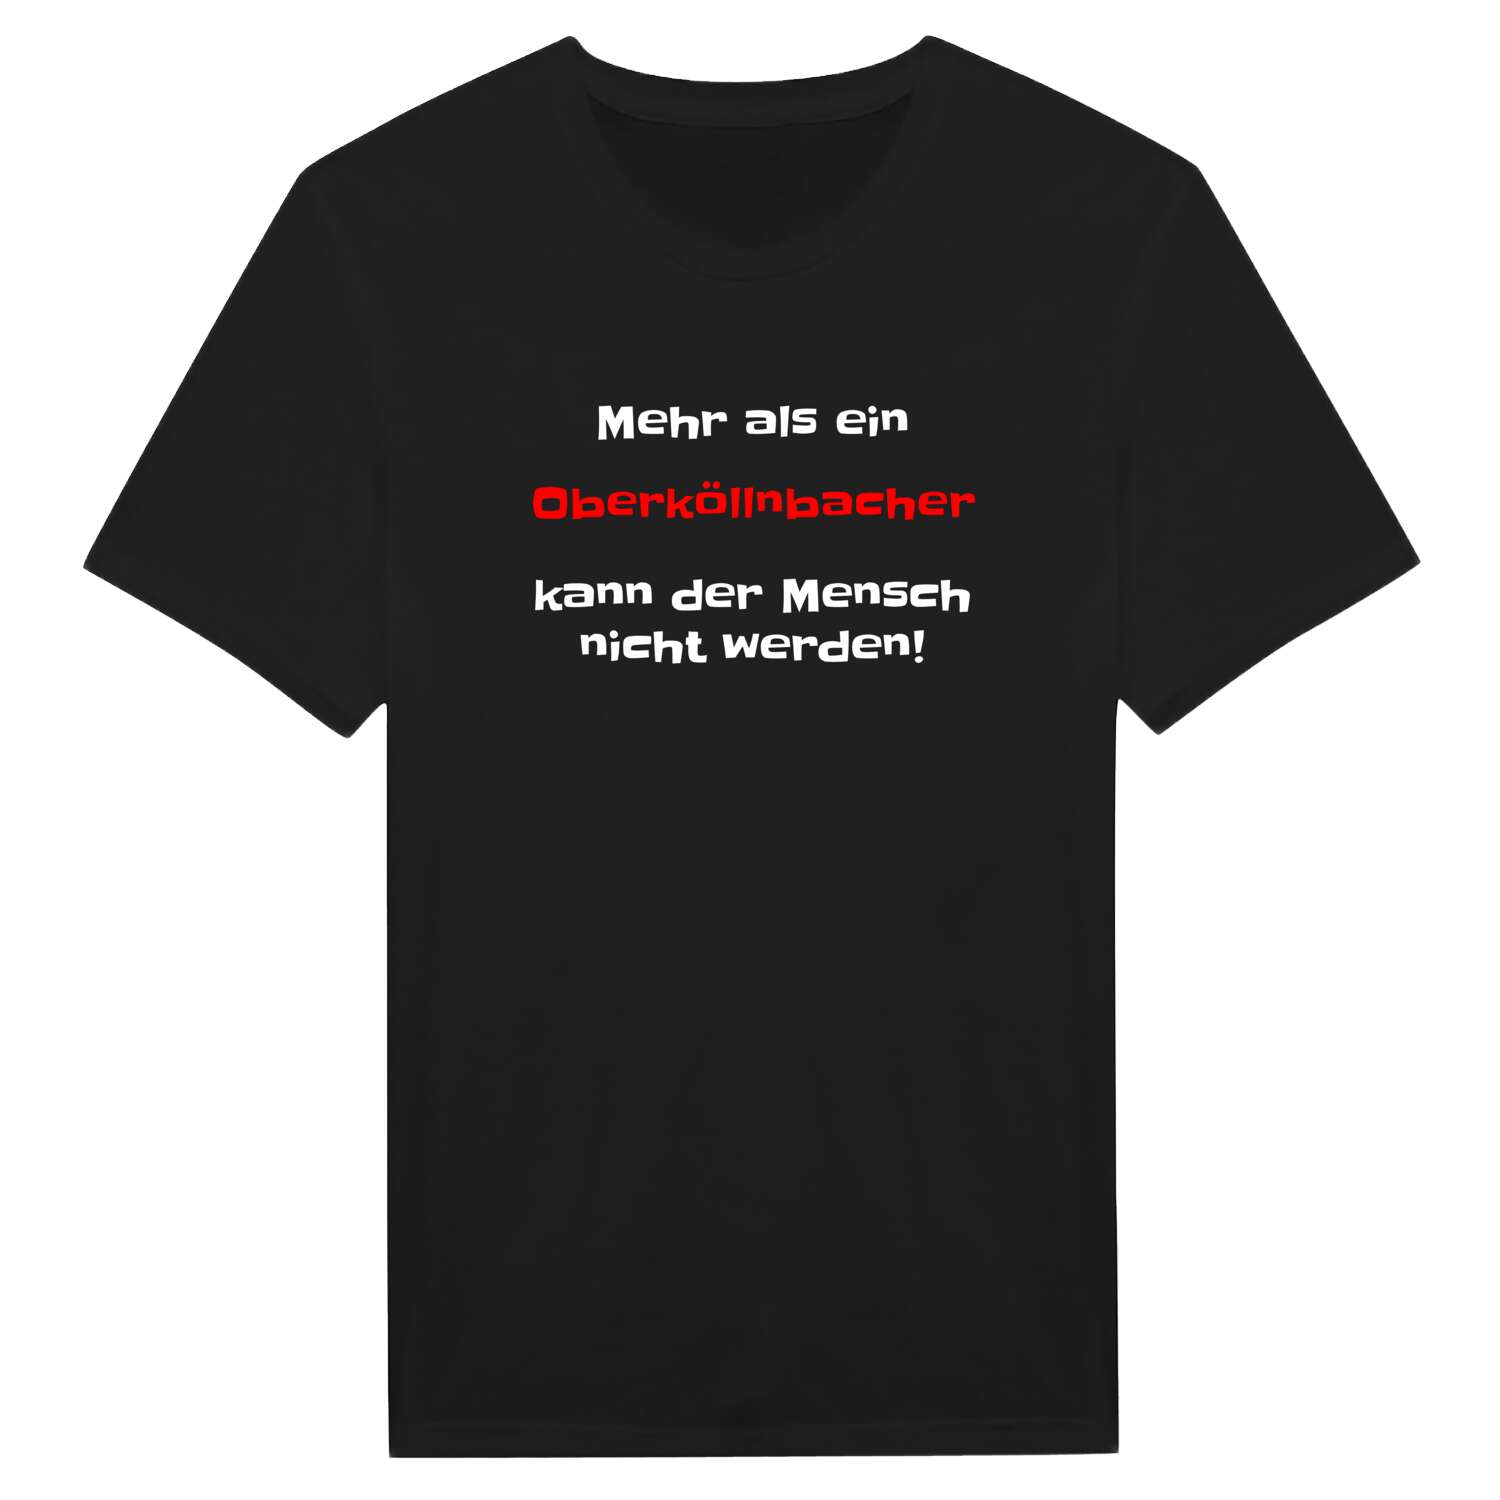 Oberköllnbach T-Shirt »Mehr als ein«